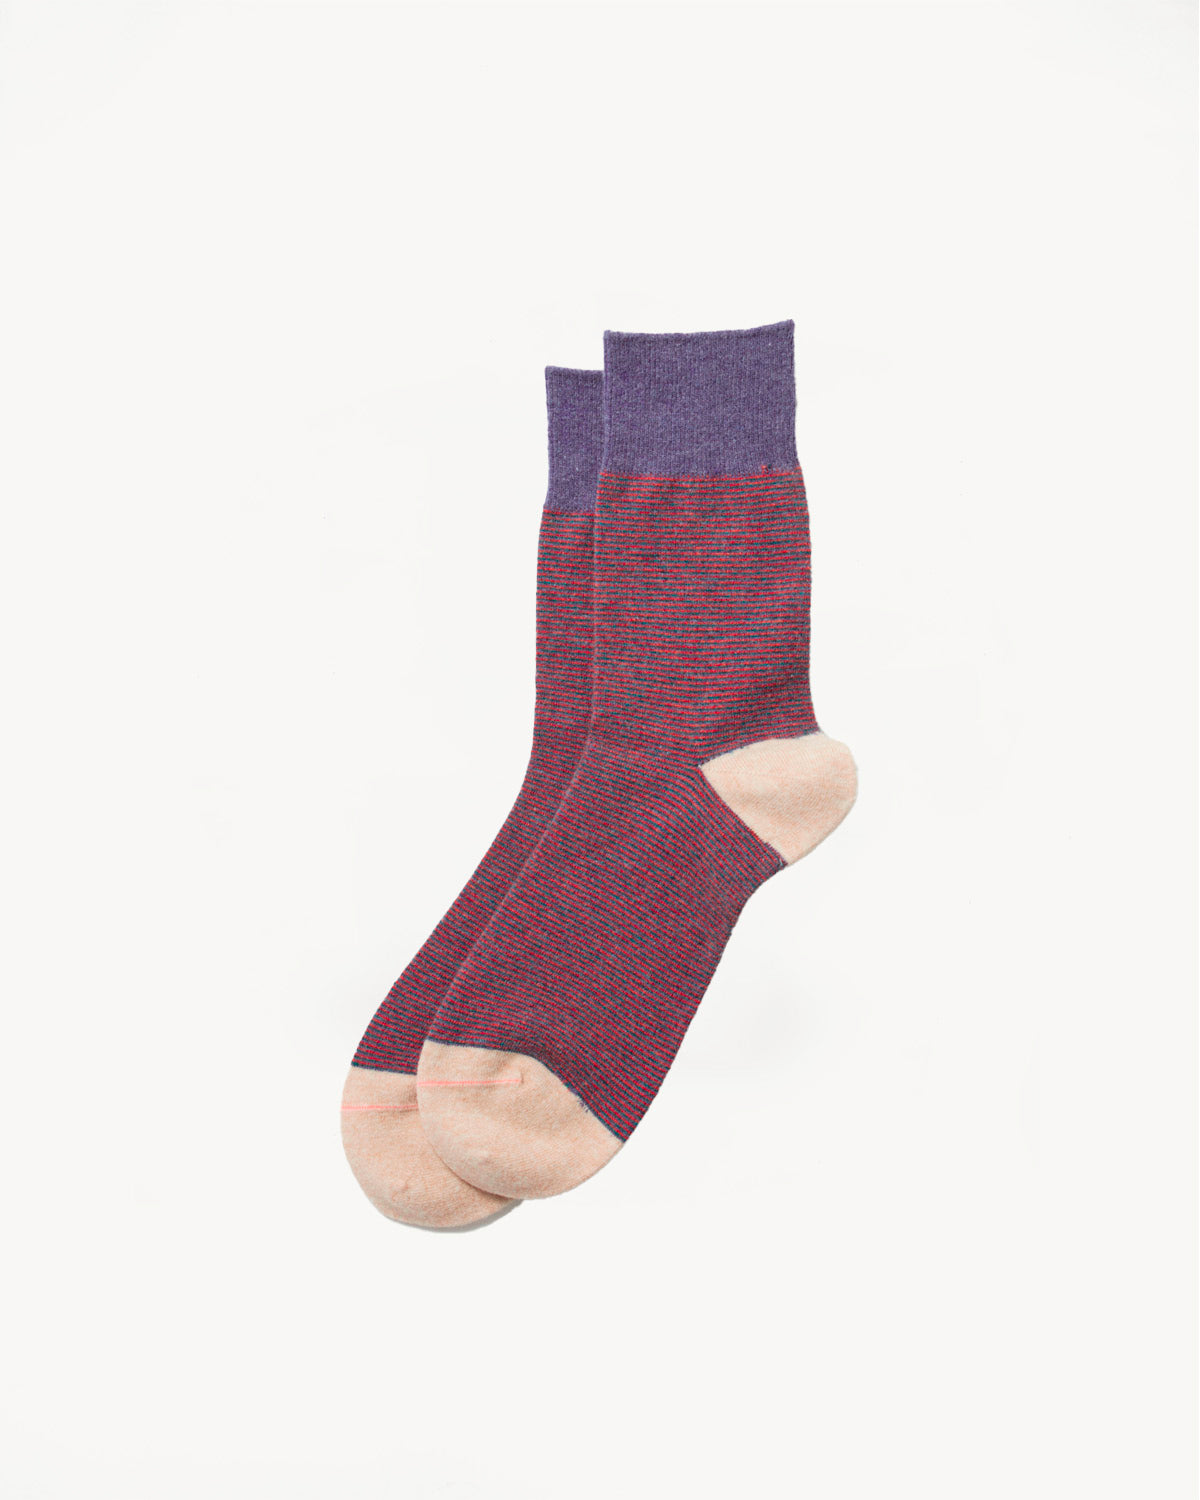 R1499 - Woolen Striped Retro Outdoor Socks - Light Purple, Ivory